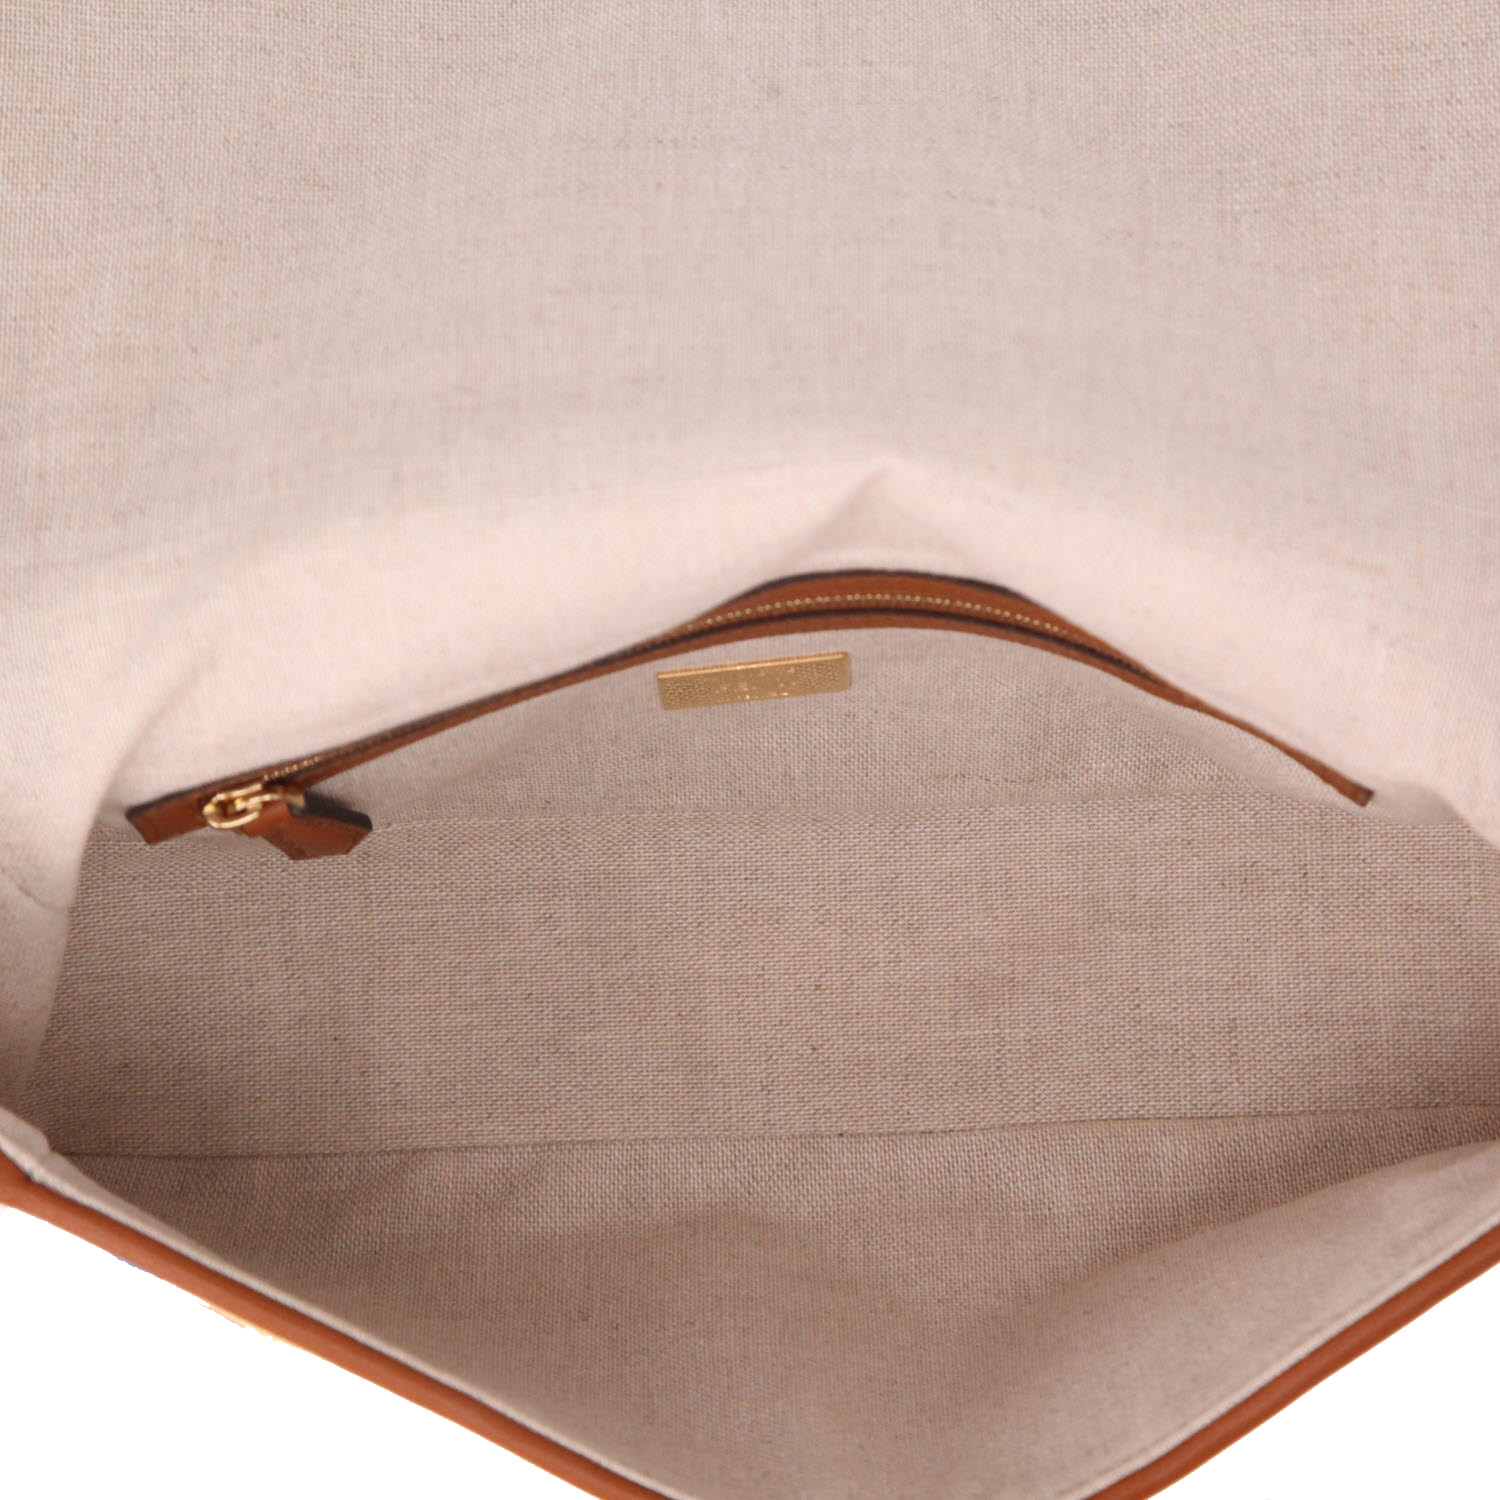 Fendi Baguette Shoulder bag 407590 | Collector Square